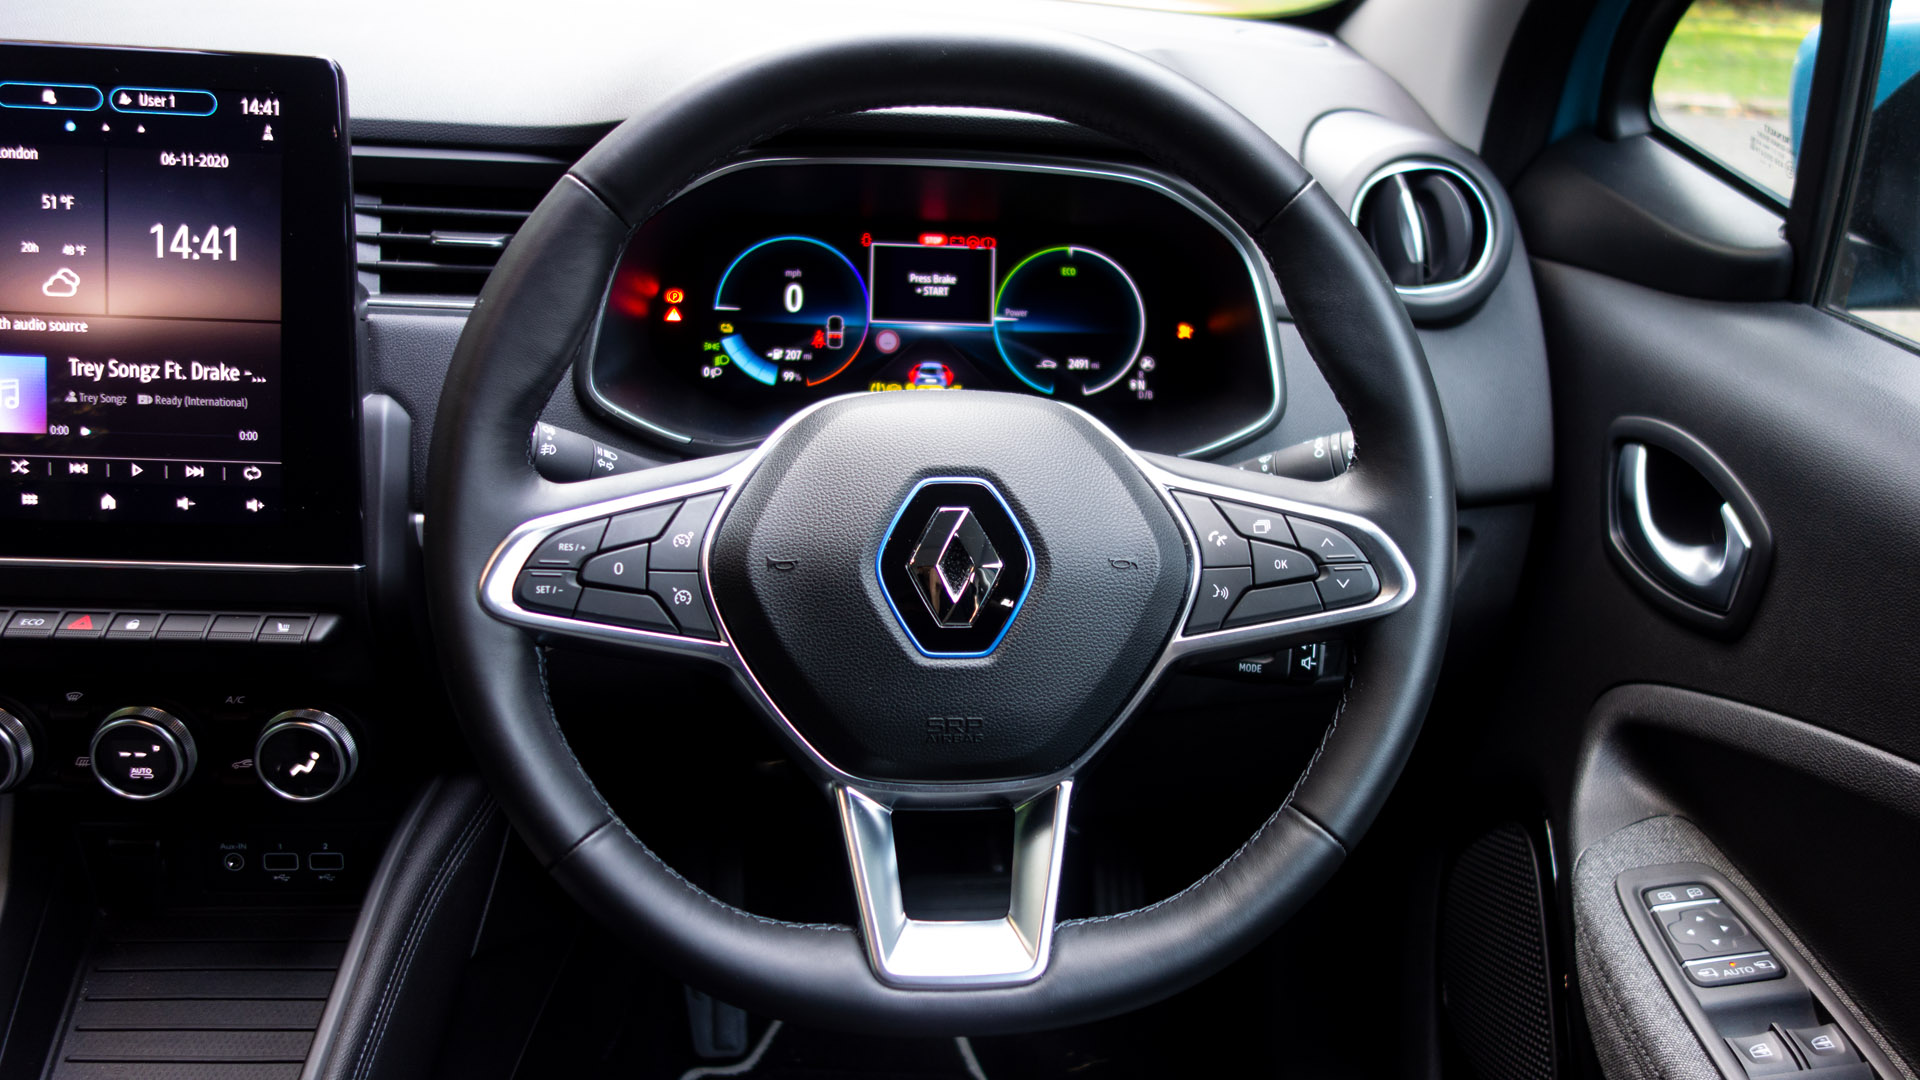 Renault Zoe steering wheel